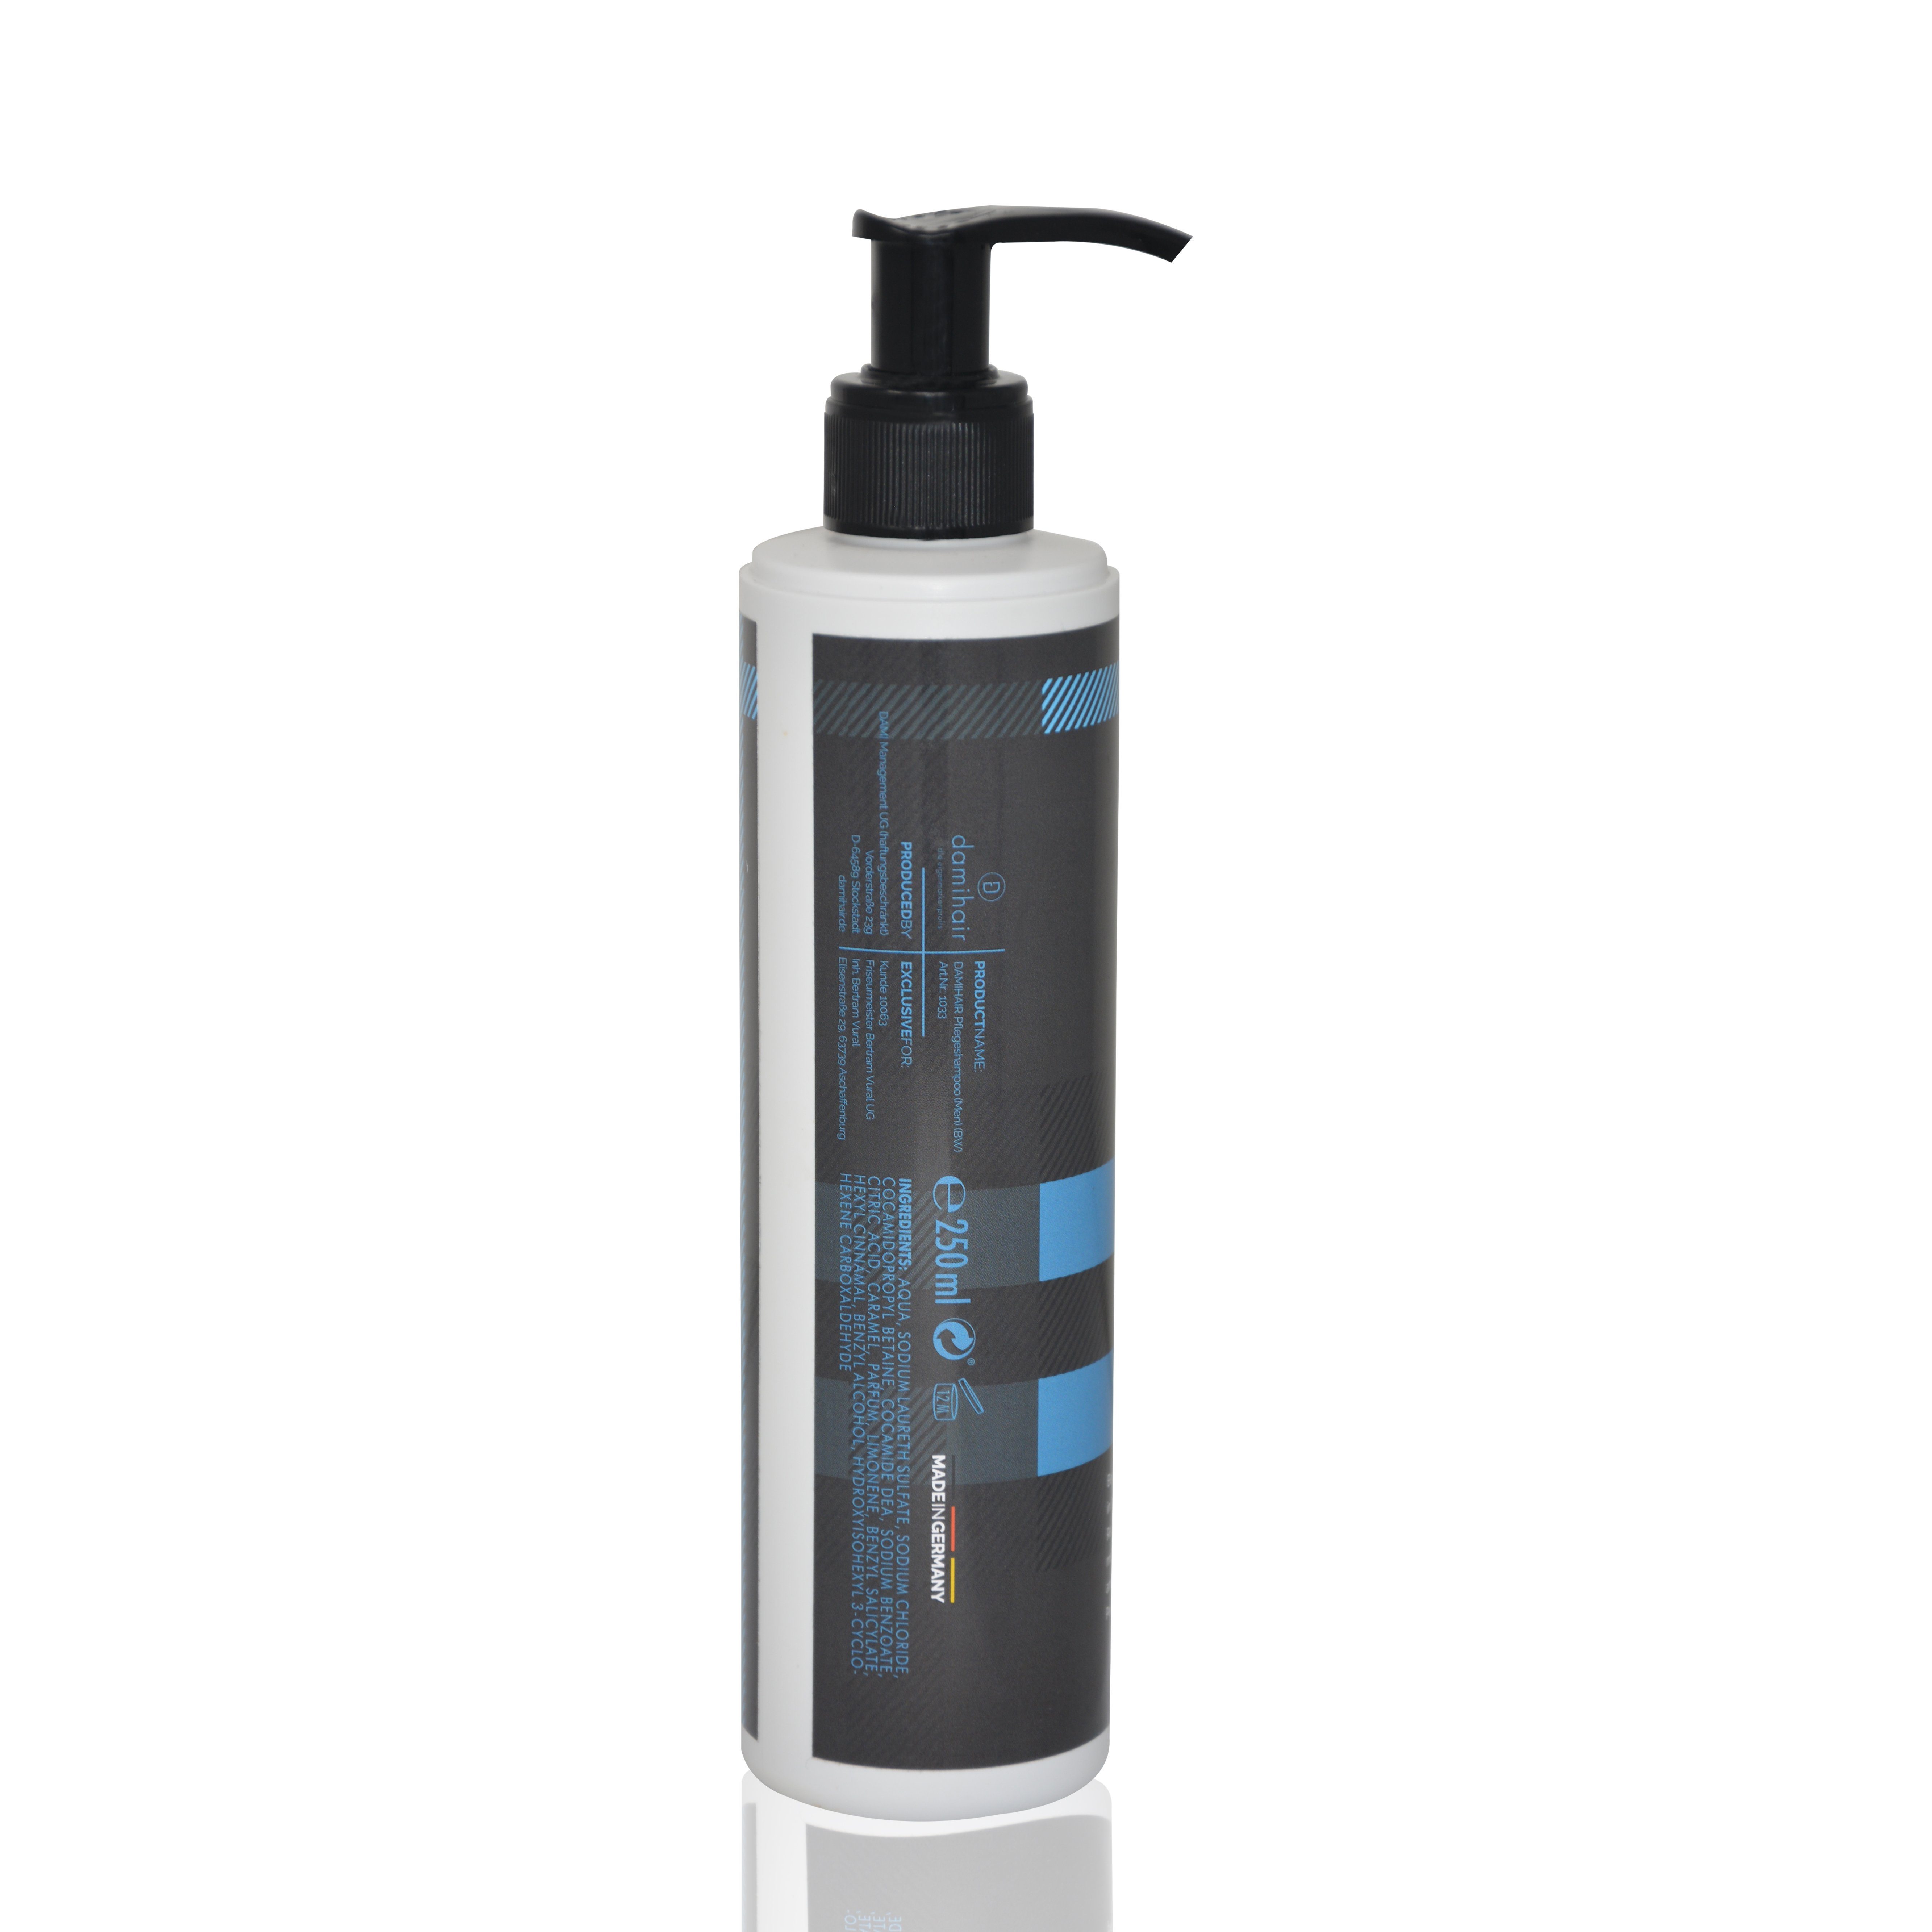 Haarshampoo Friseurmeister Formel for Men Shampoo für Männer Haare 250ml Milde